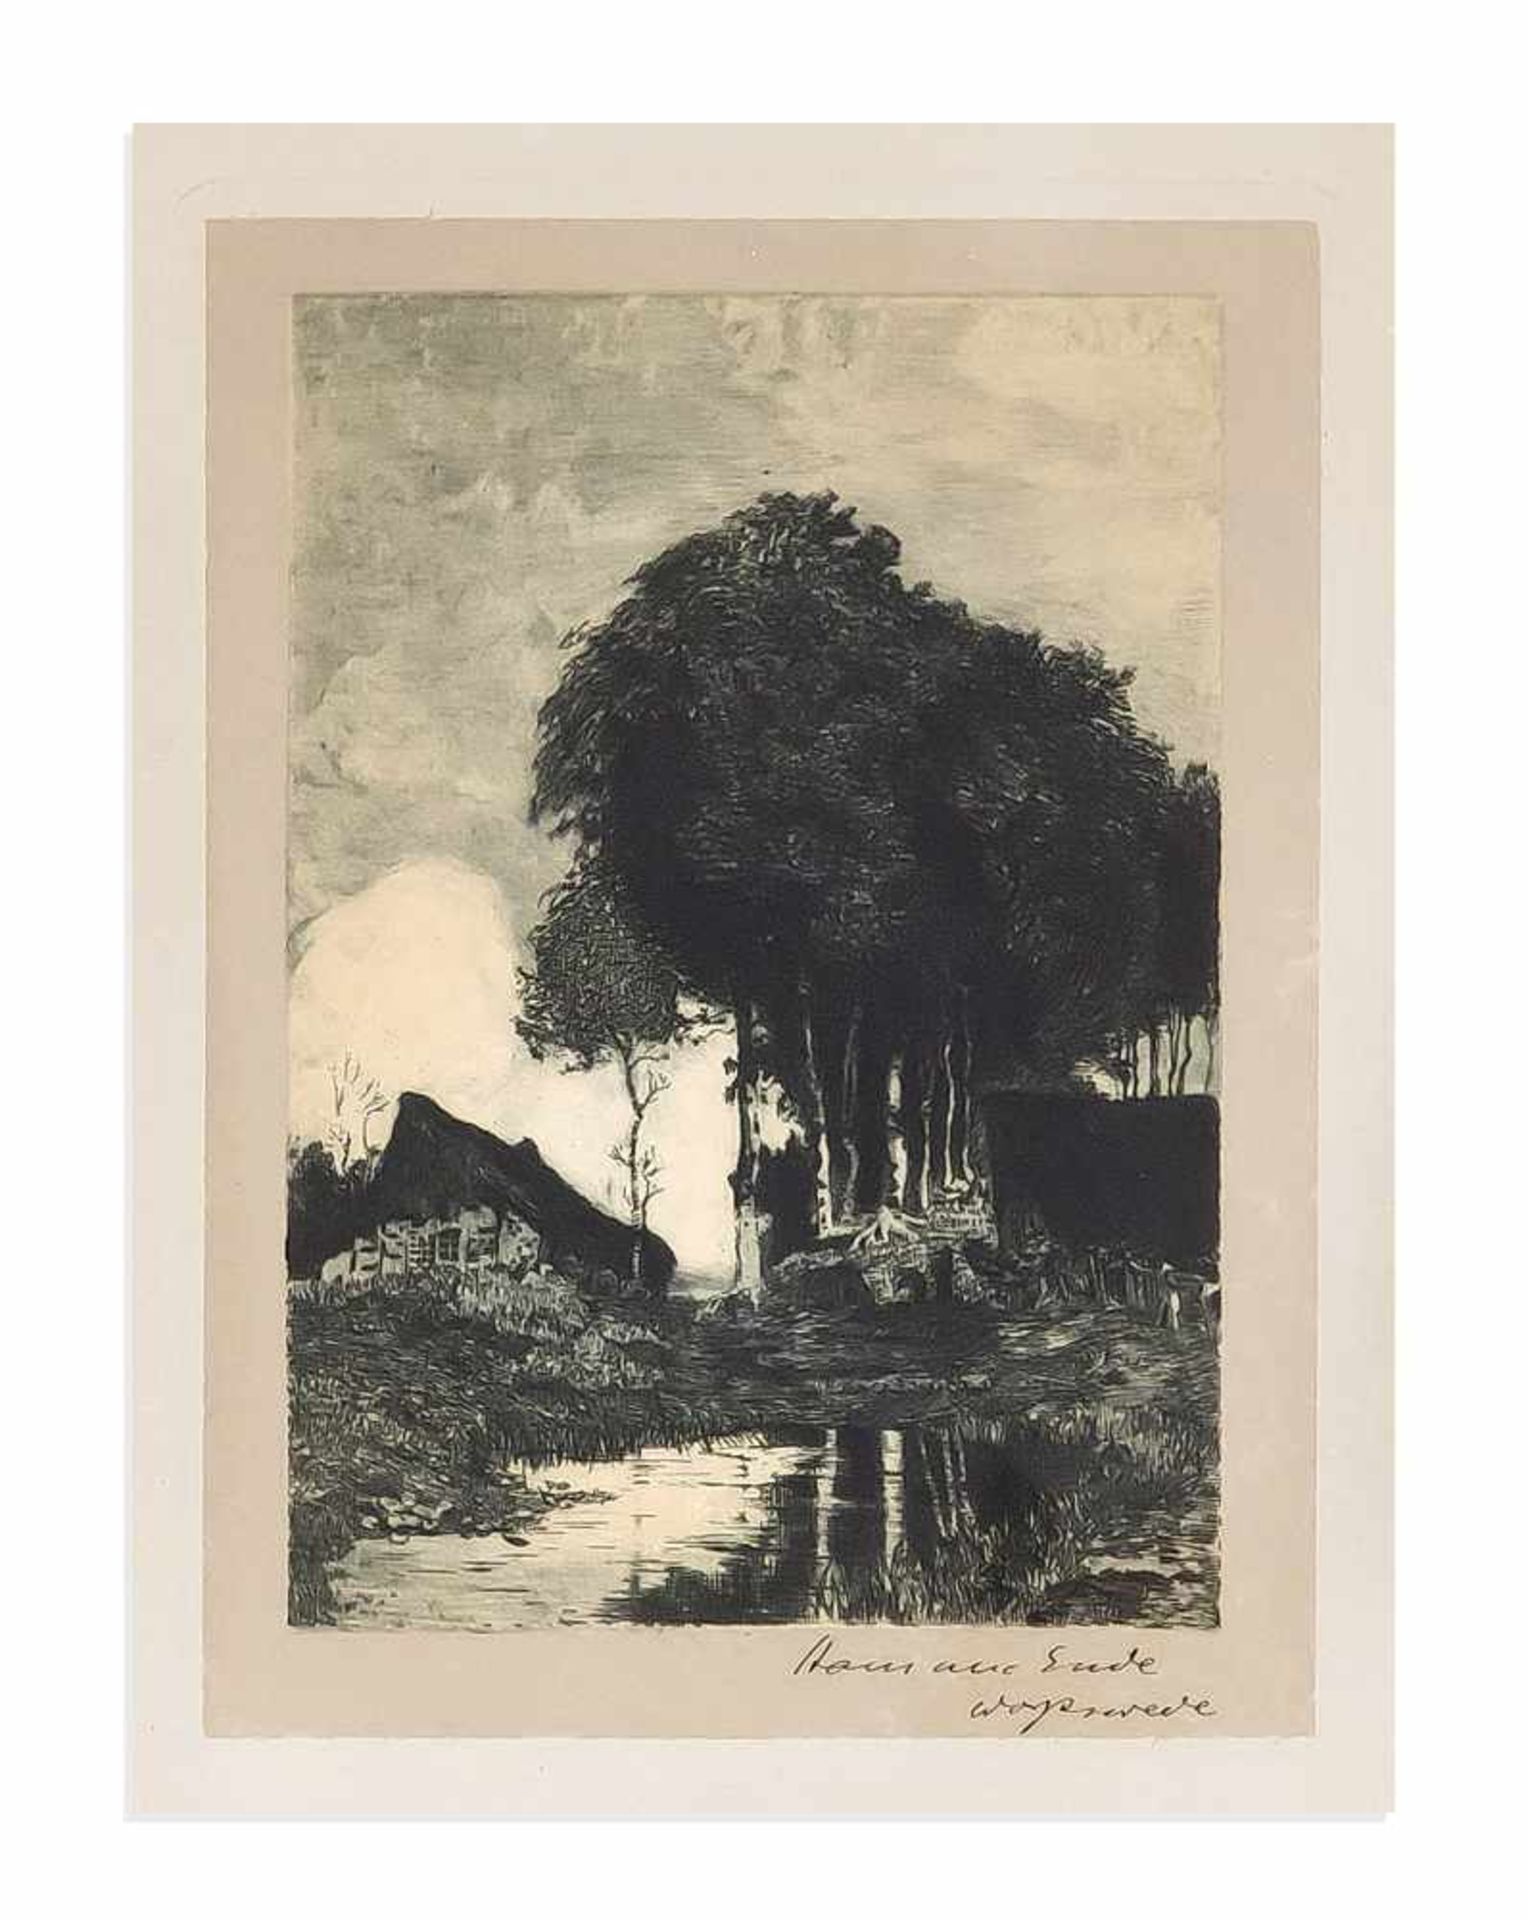 Ende, Hans am. 1864 Trier - 1918 Stettin. Worpsweder Moorlandschaft mit Birken und Kate,Radierung in